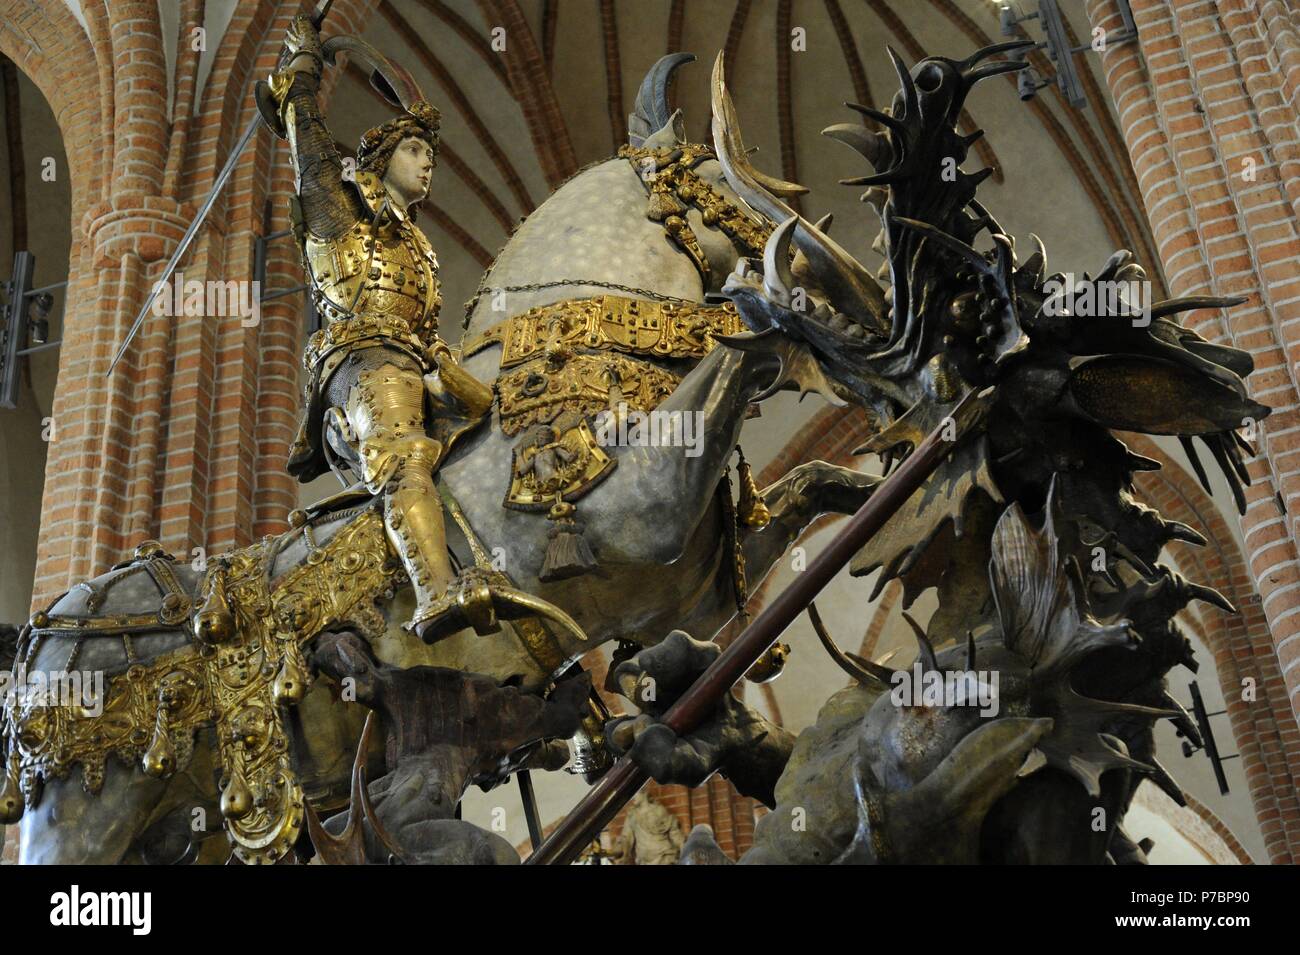 ARTE GOTICO. SUECIA. San Jorge matando al Dragón, 1489. Estatua de Bernt Notke (1435-1509). Catedral de San Nicolás. Estocolmo. Stock Photo